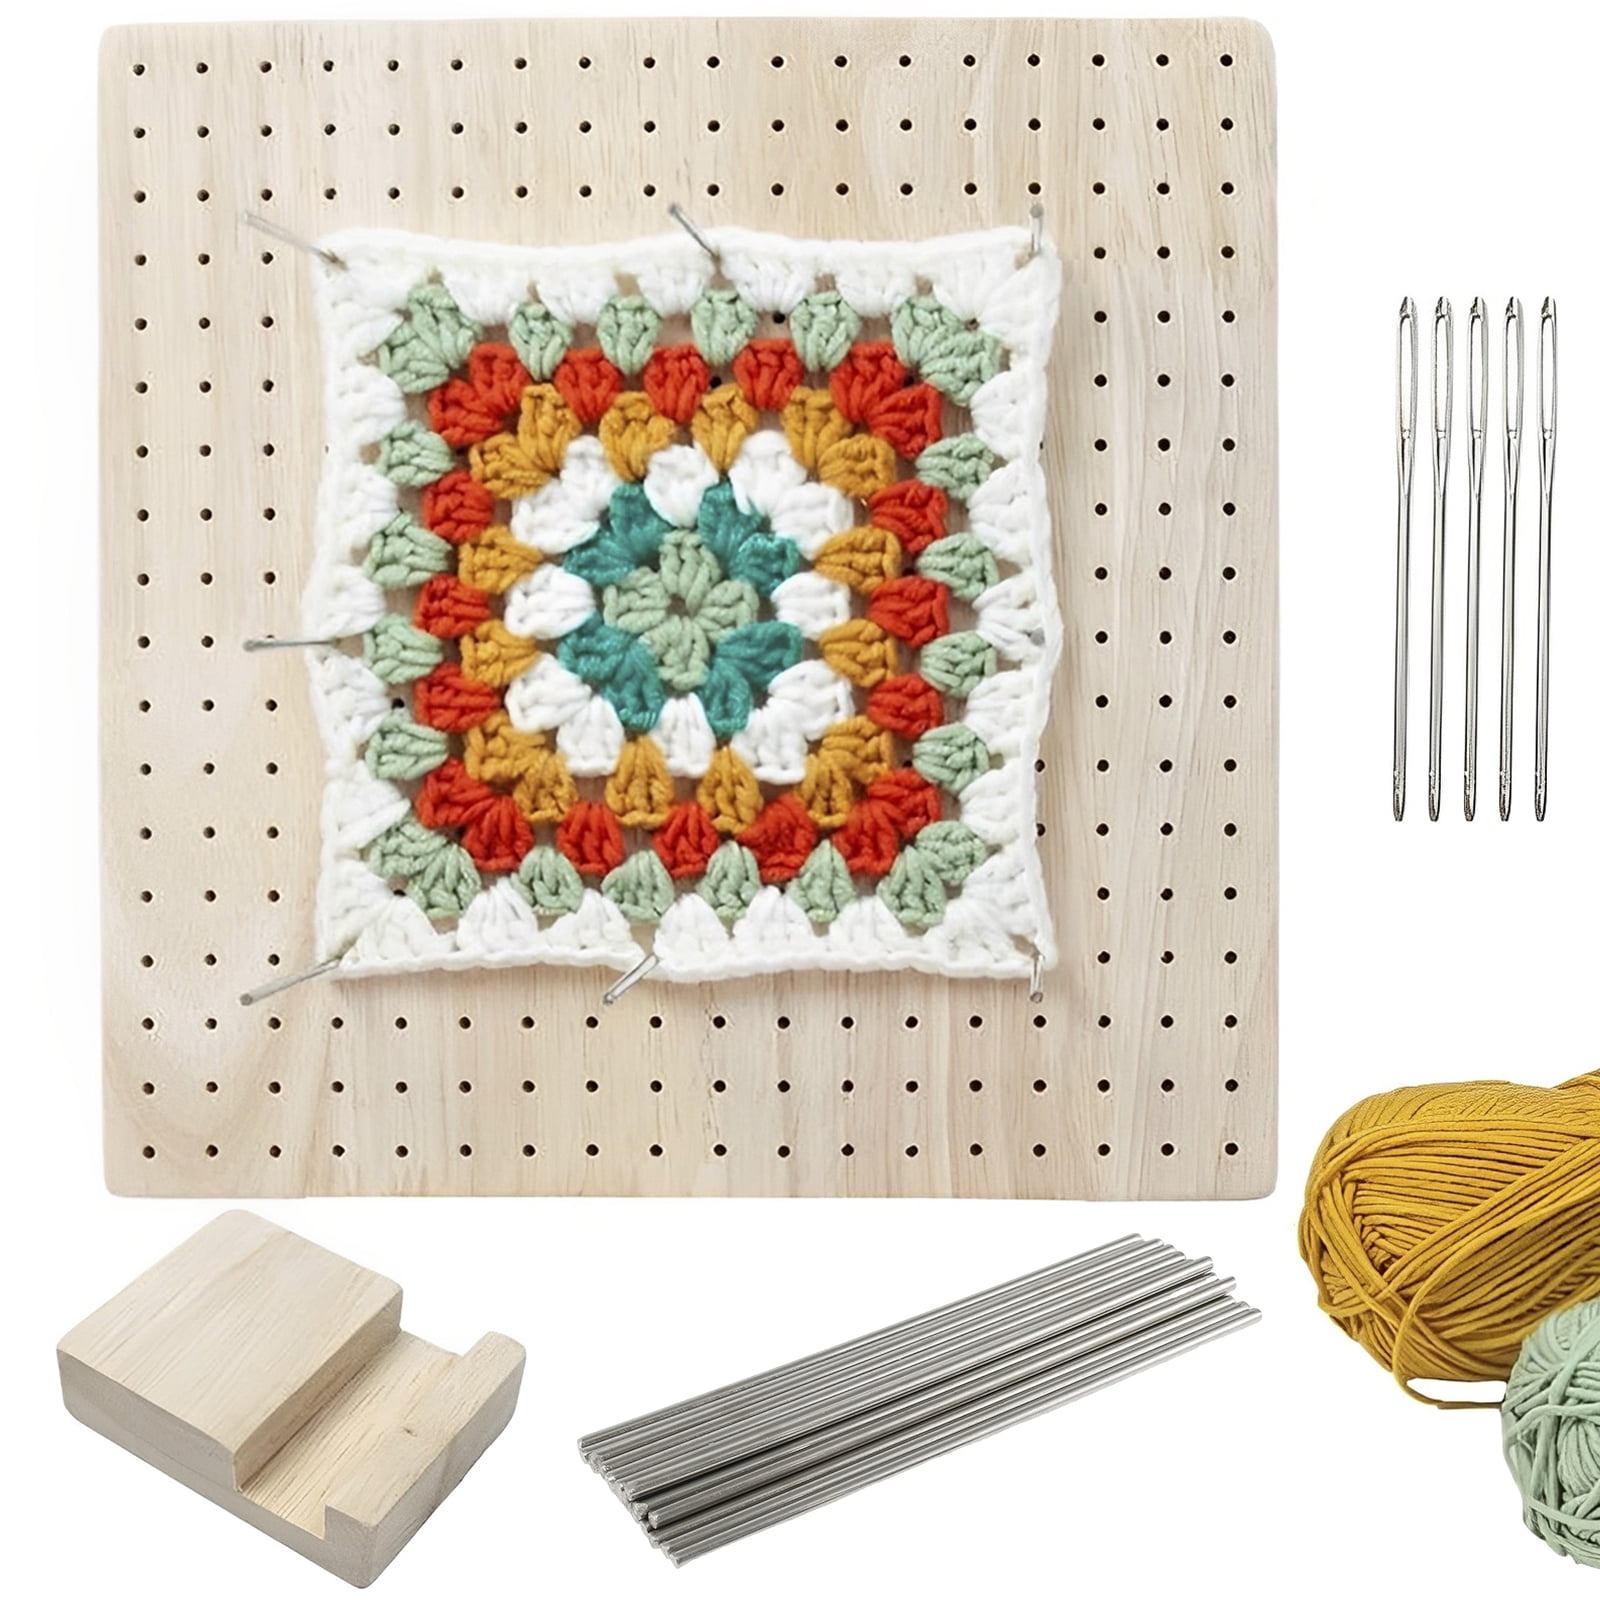 Crochet Blocking Board – Hooks & Needles